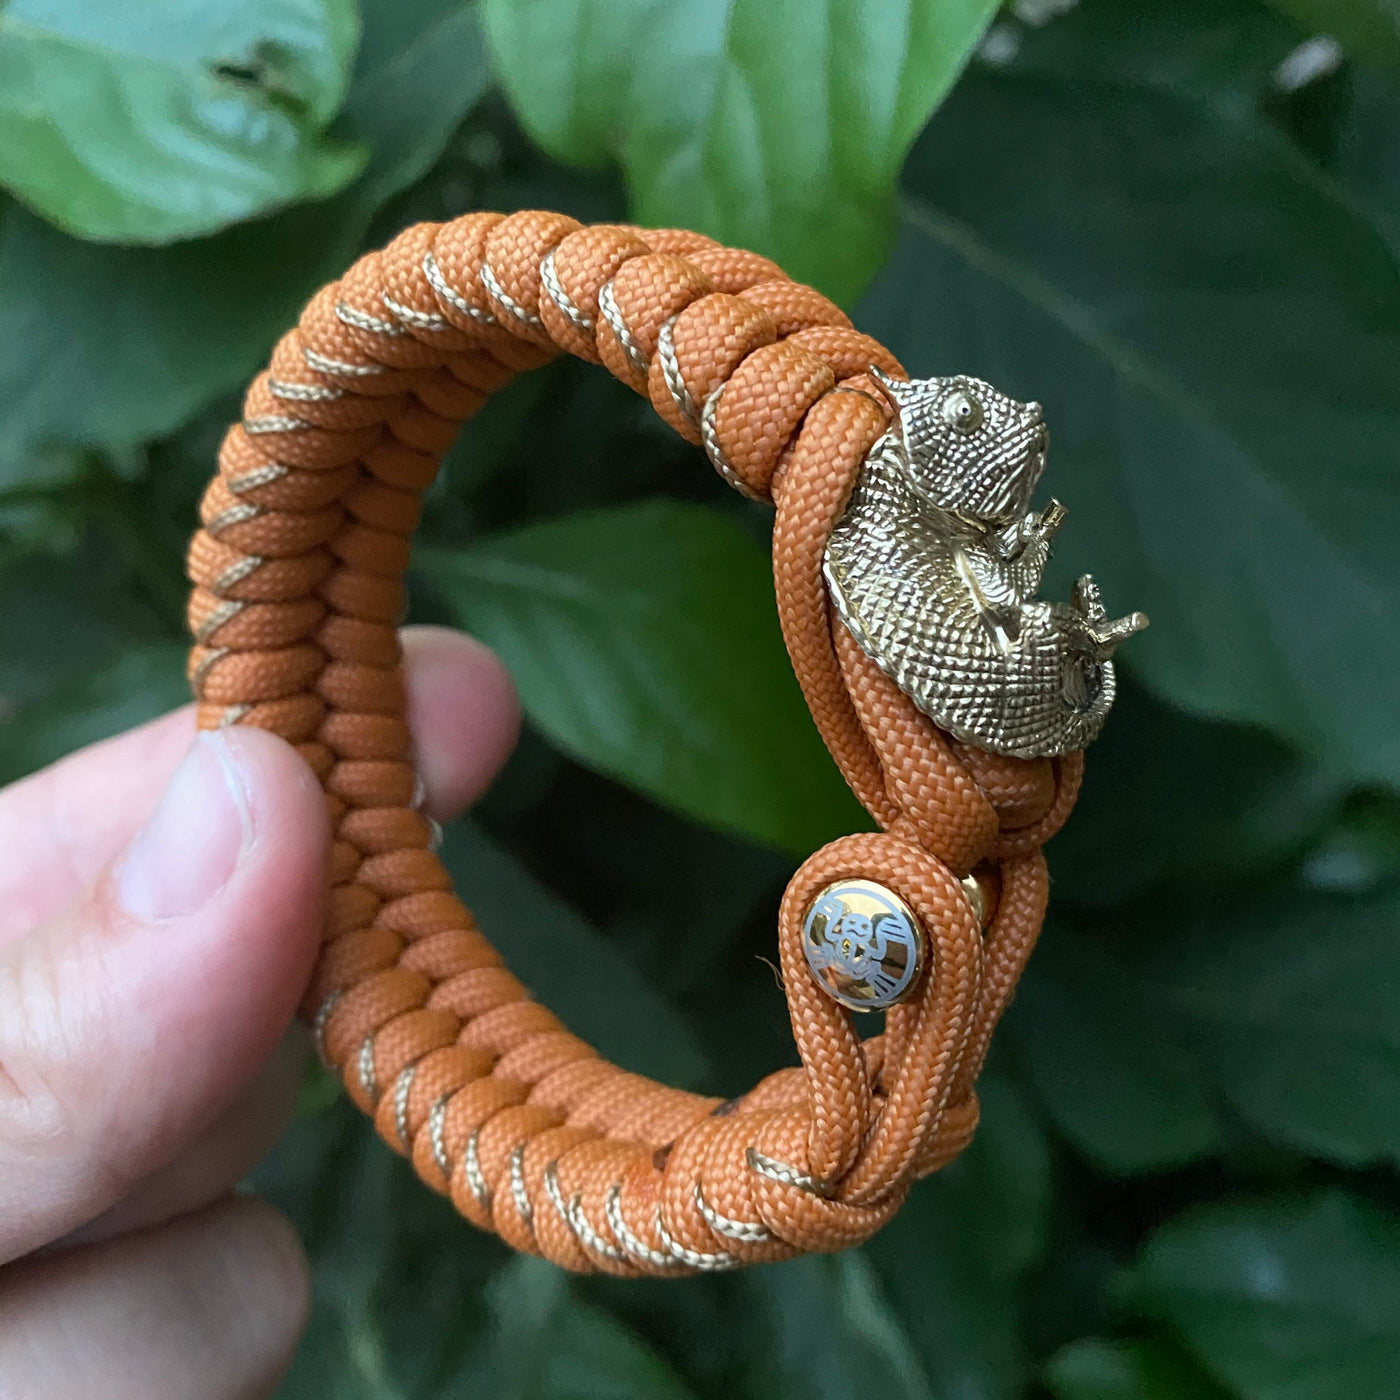 The Chameleon original bracelet